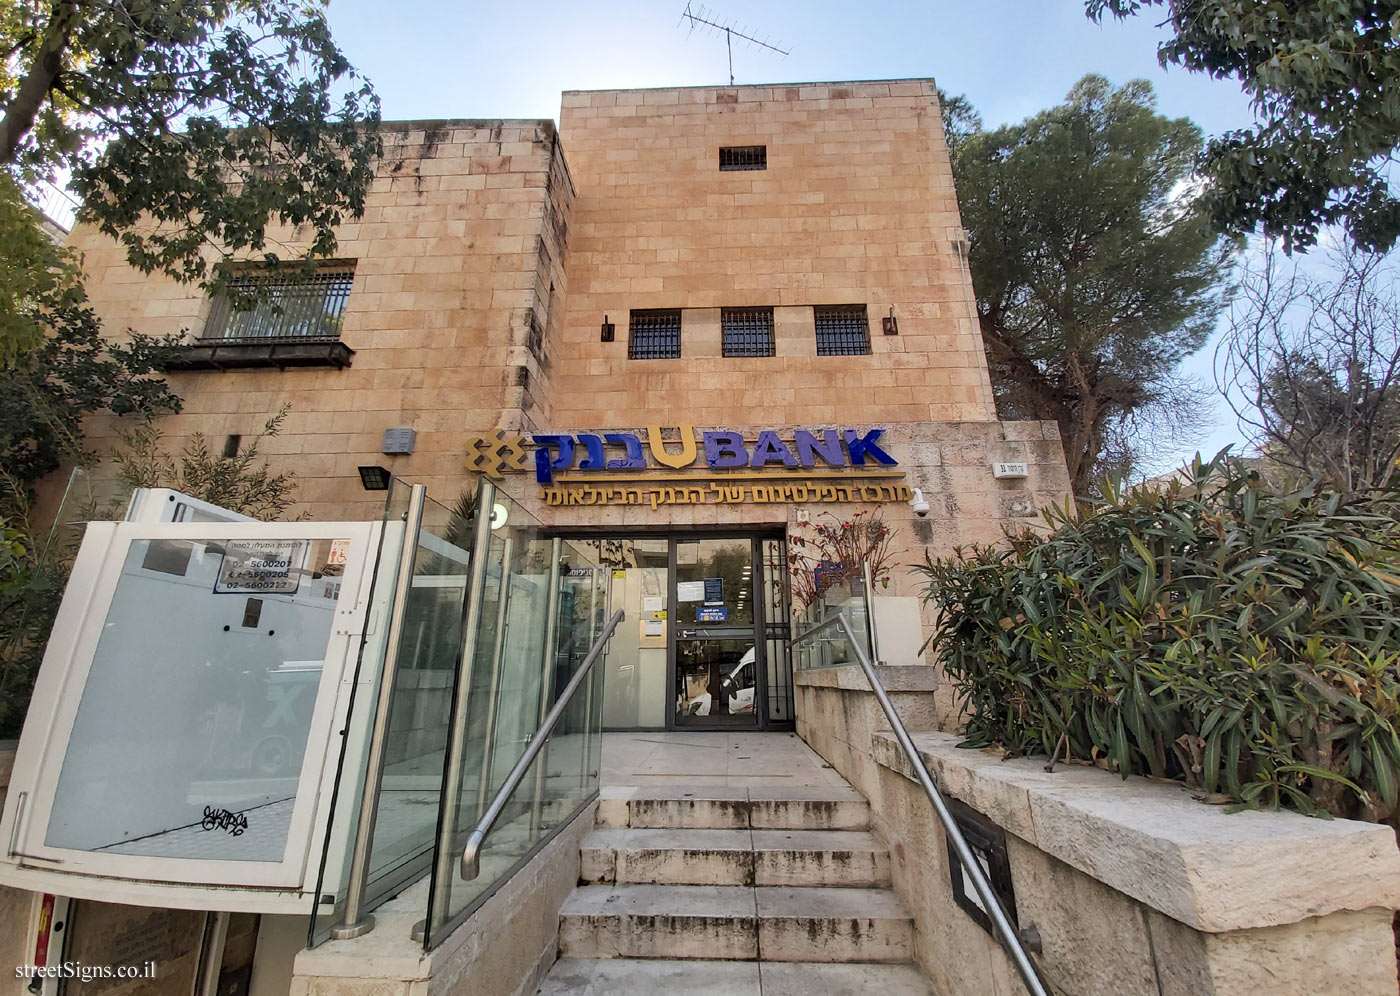 Jerusalem - Heritage Sites in Israel - The Palestine Potash Ltd. House - Keren HaYesod St 32, Jerusalem, Israel